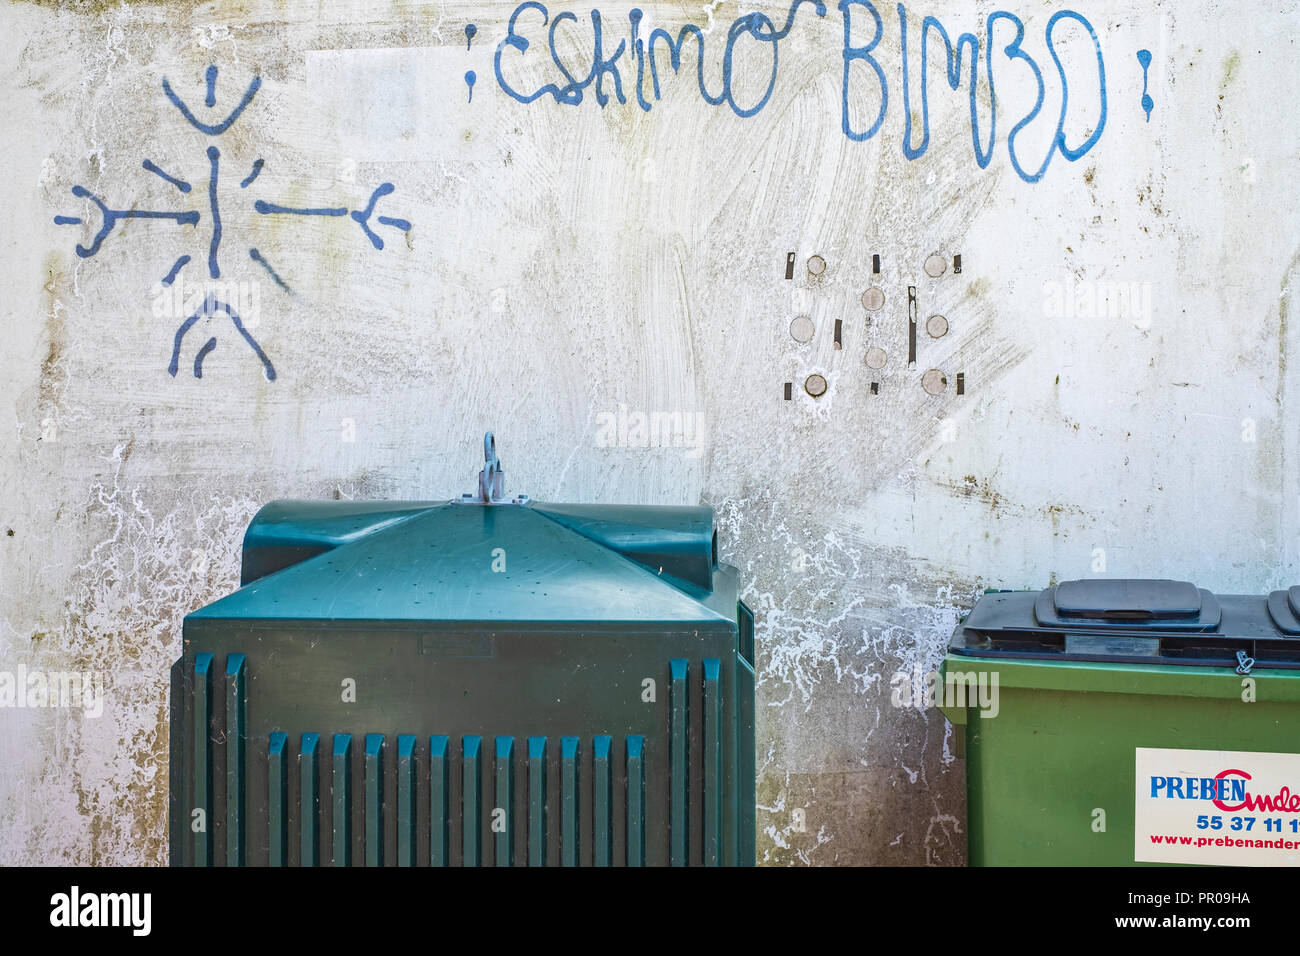 Contenitori per rifiuti e graffito dicendo ESCHIMESE BIMBO, Harbolle Havn sull isola Moen, Danimarca, Scandinavia, Europa. Foto Stock